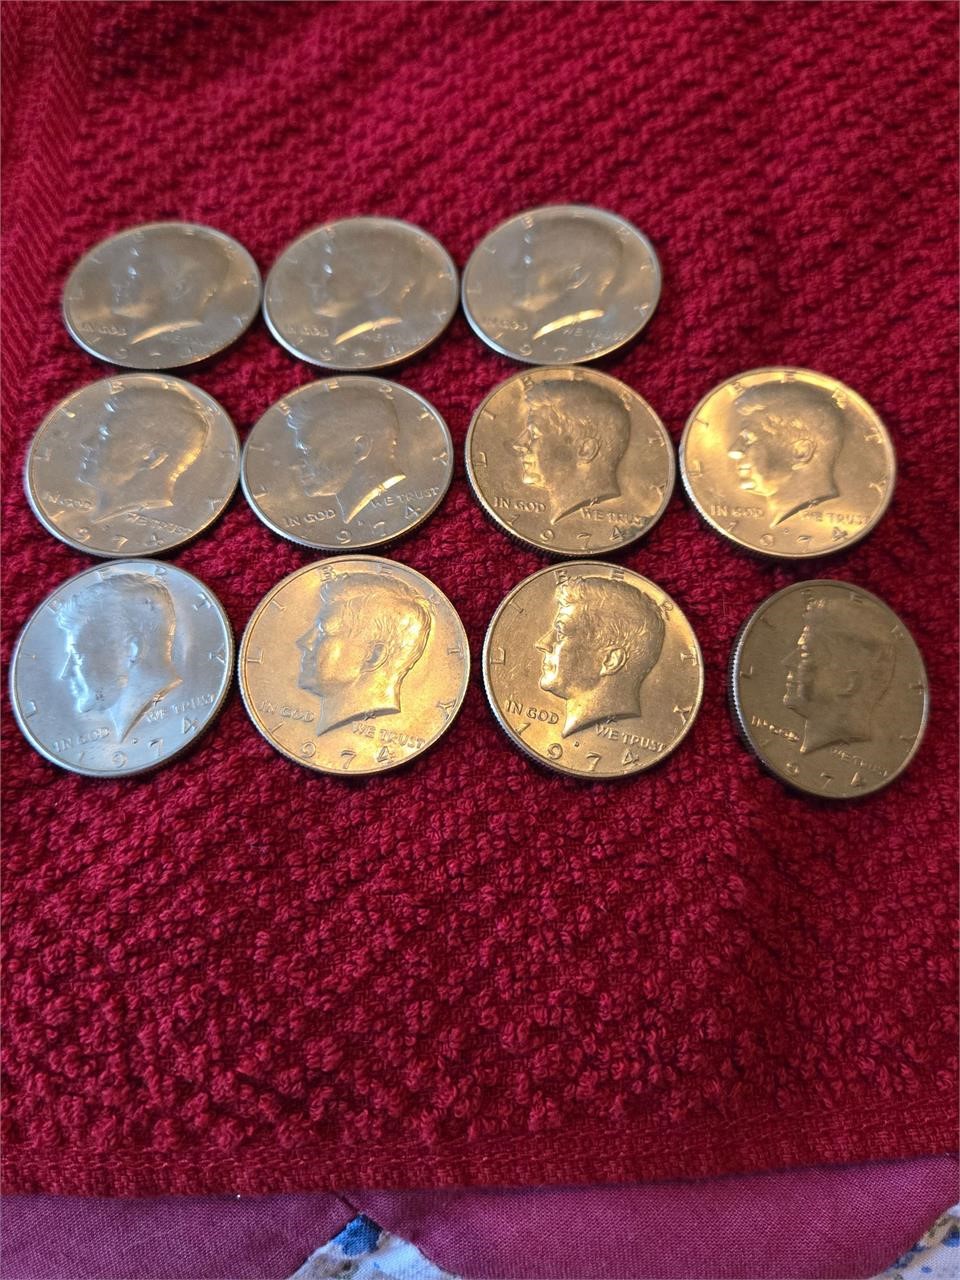 11 1974 Kennedy half dollars